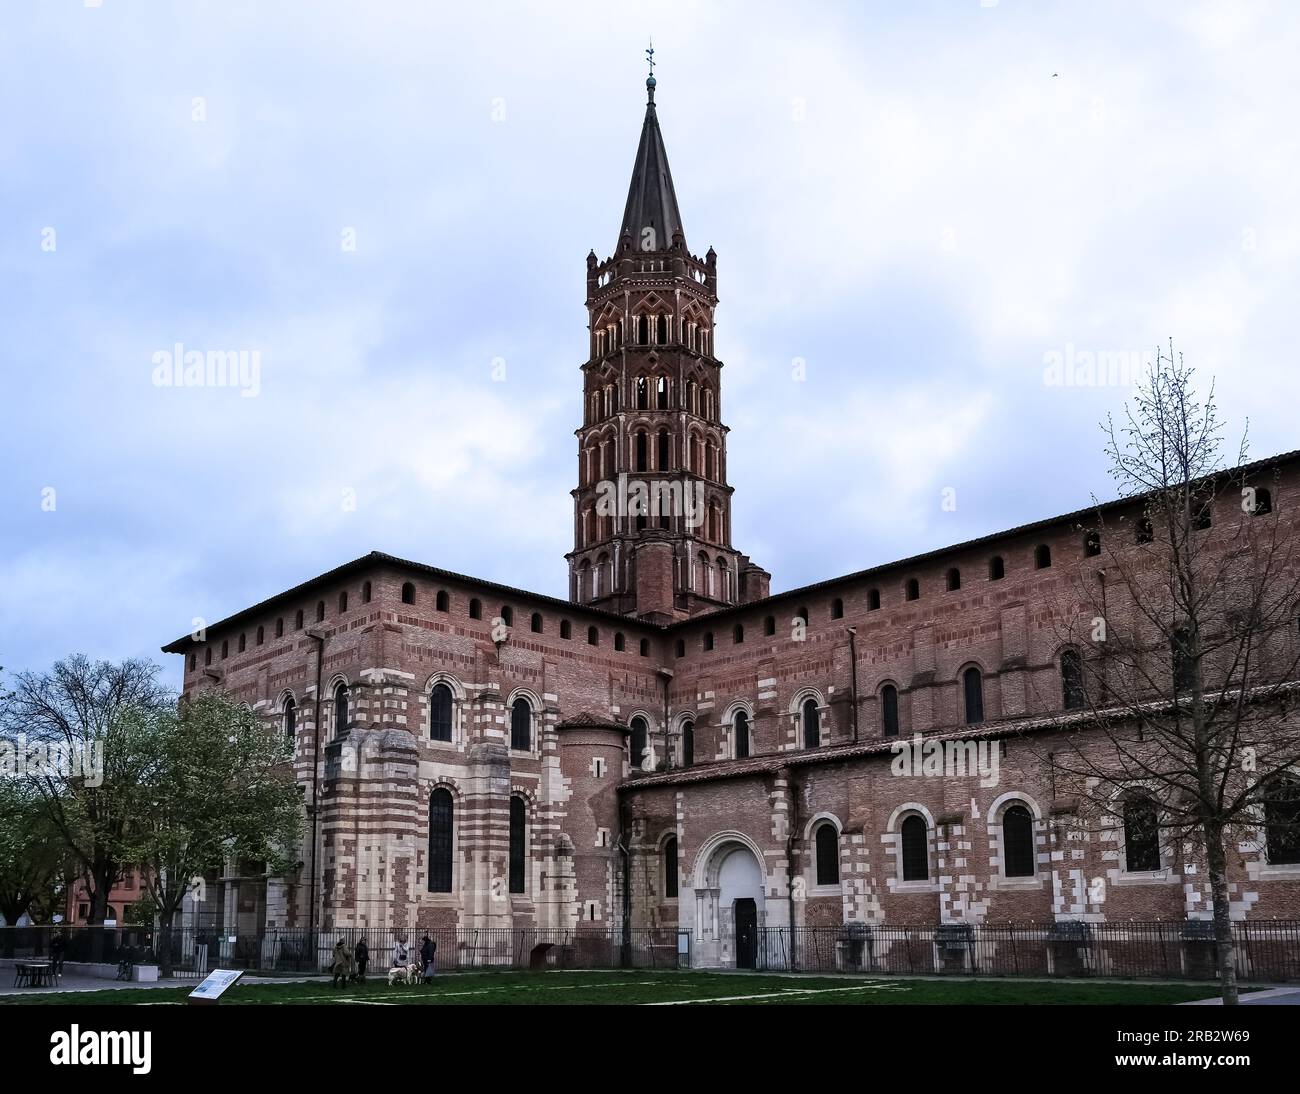 Architektonische Details der Basilika Saint-Sernin, einer Kirche in Toulouse, Frankreich, und der ehemaligen Abteikirche der Abtei Saint-Sernin Stockfoto